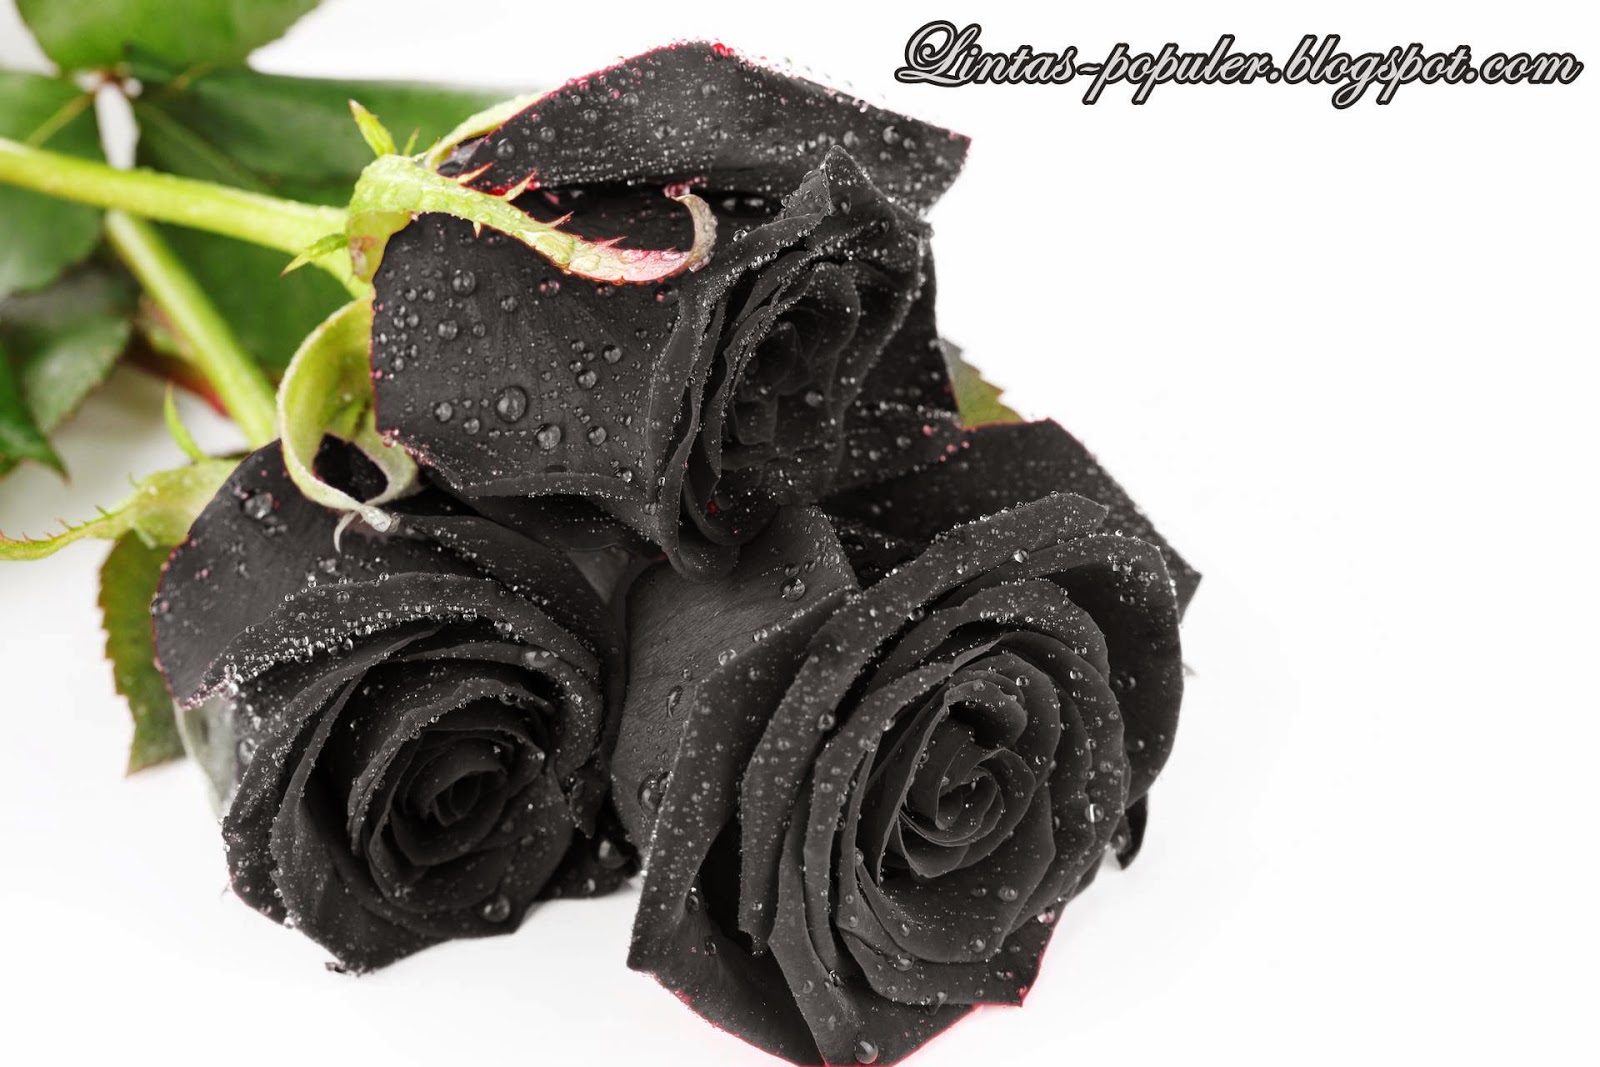 fond d'écran mawar hitam,rose,roses de jardin,famille rose,plante,fleur